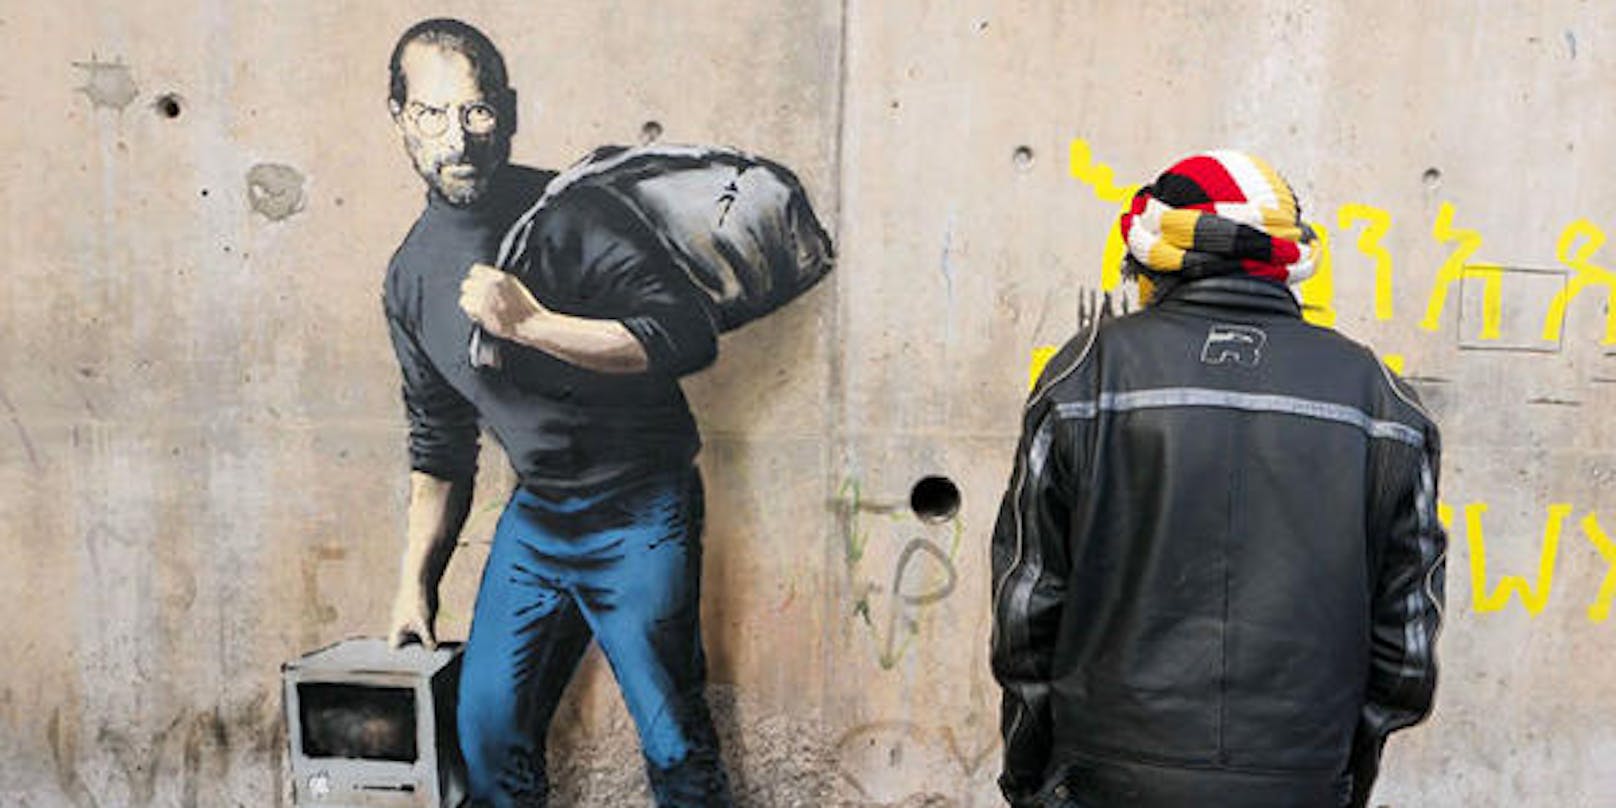 Banksy-Graffiti in Calais: Steve Jobs als Flüchtling unter Flüchtlingen